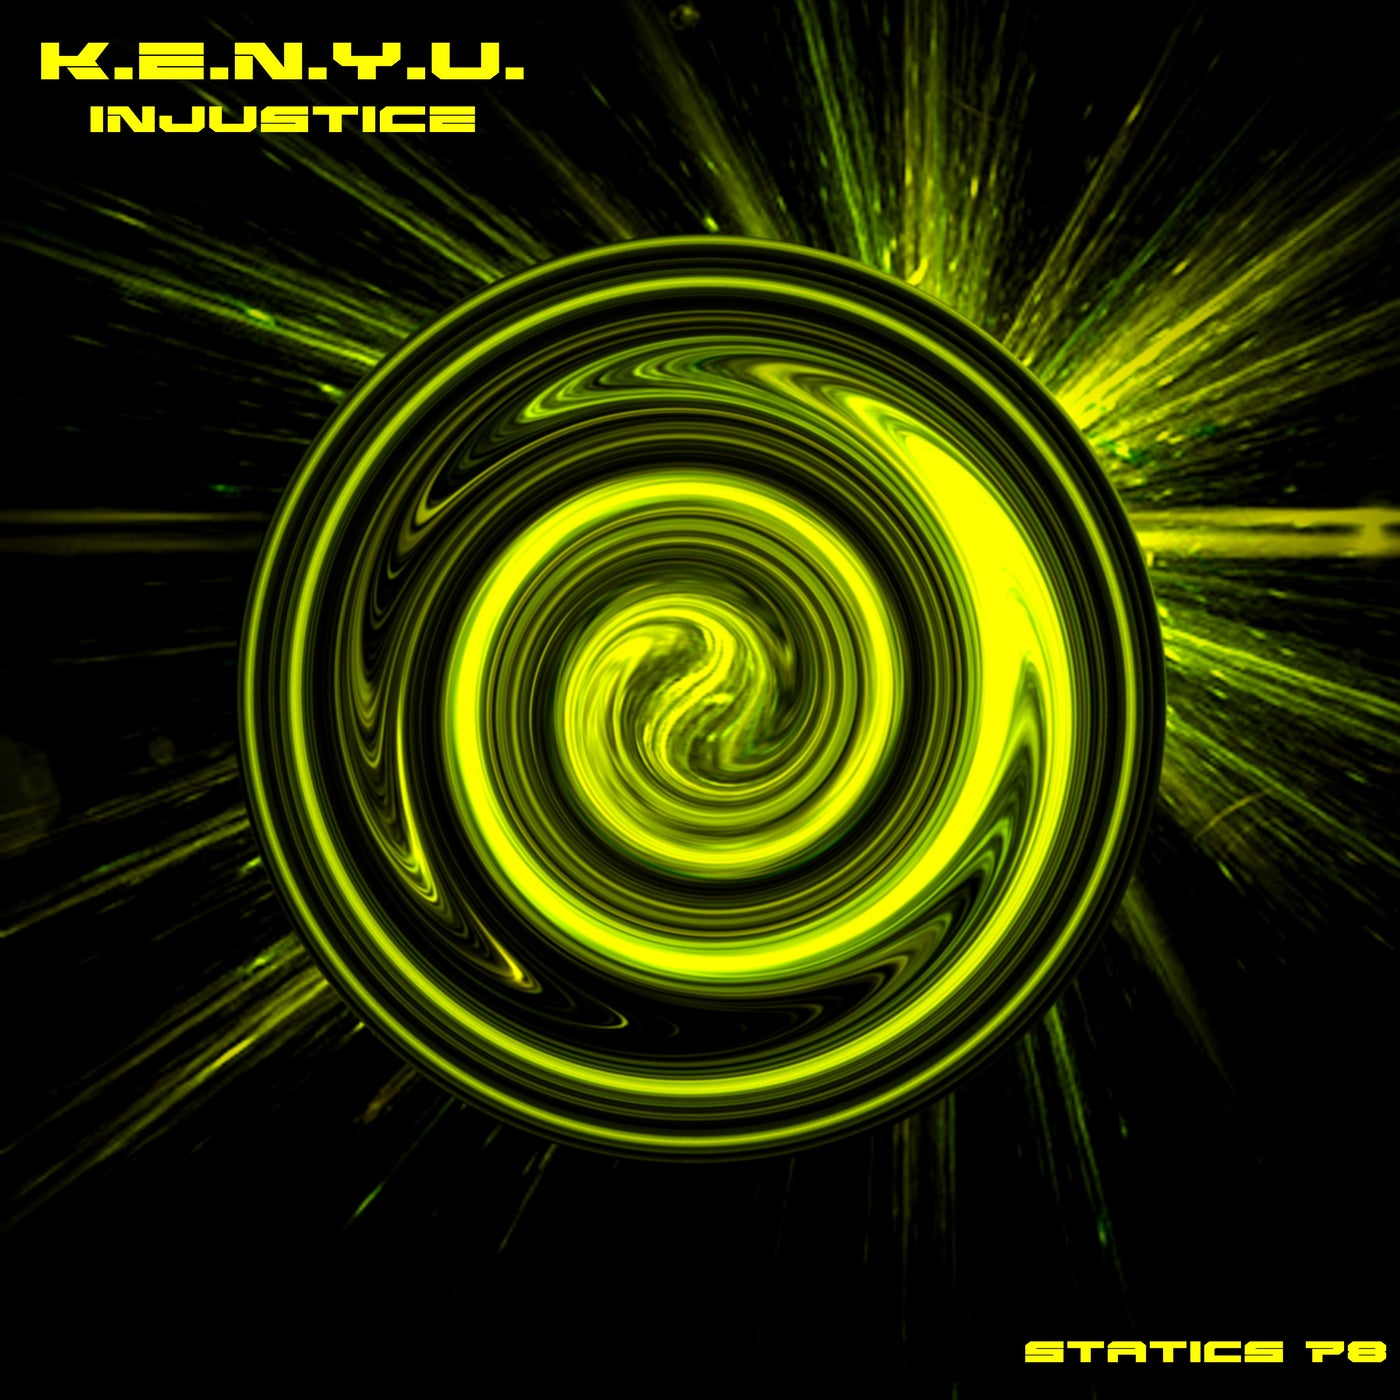 K.E.N.Y.U. music download - Beatport